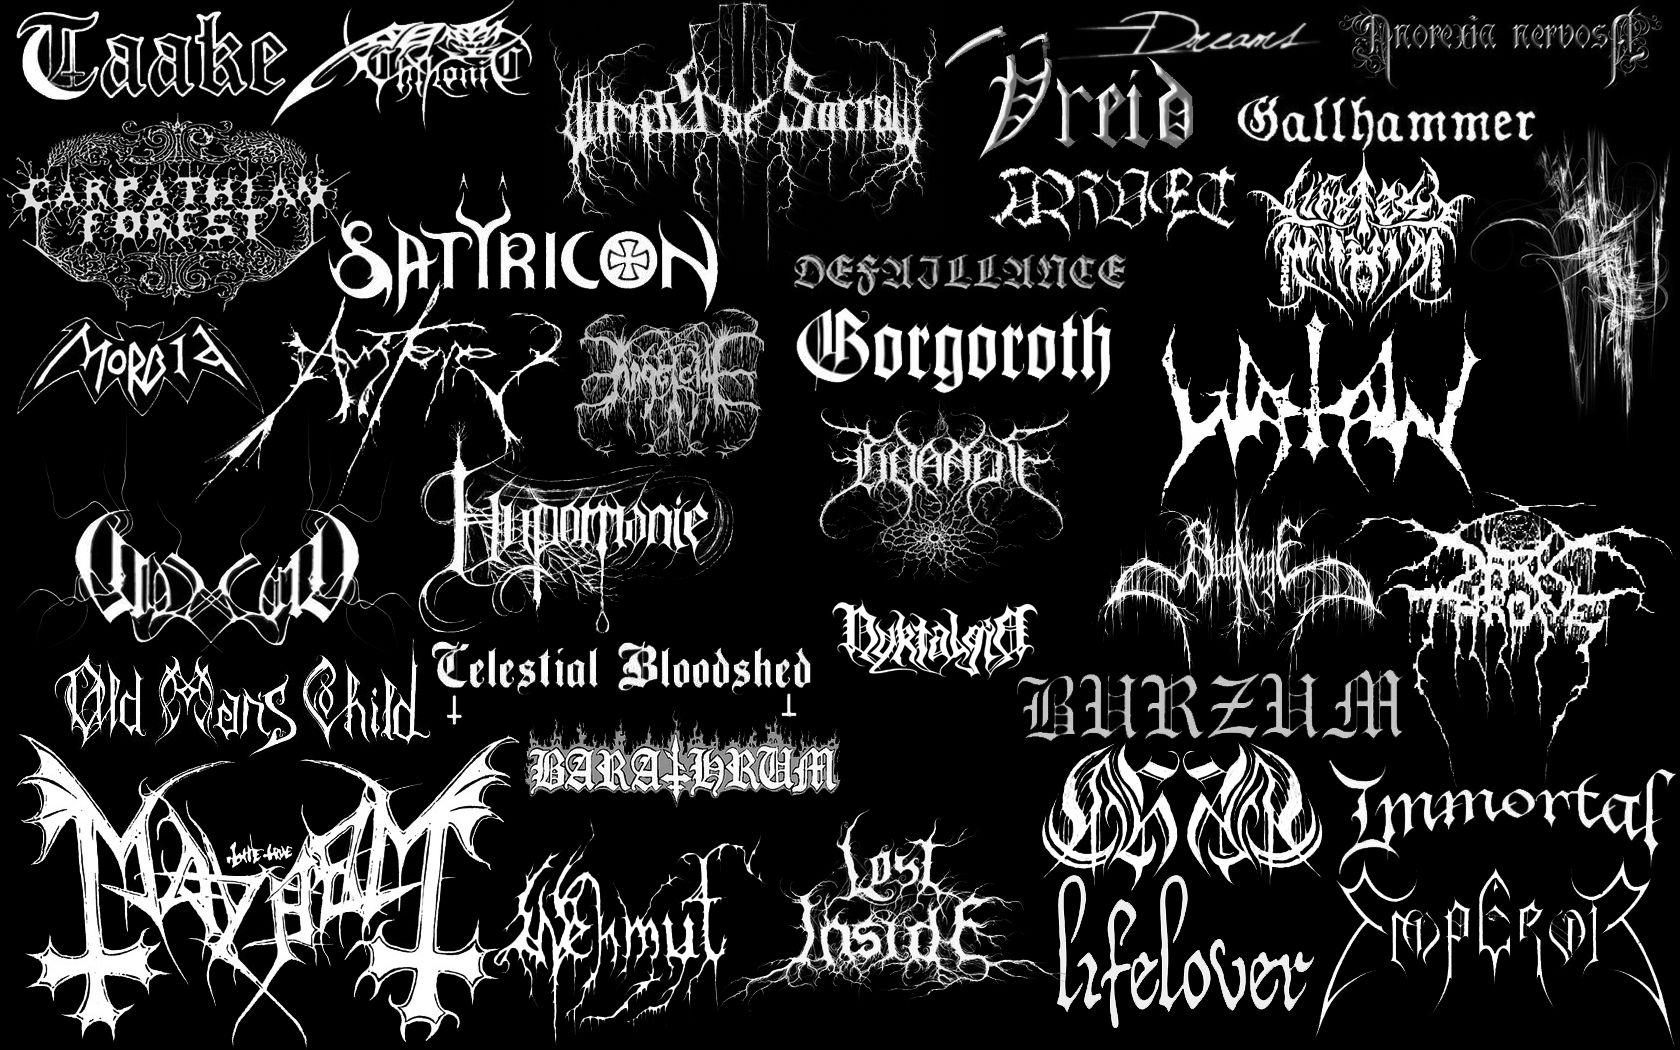 Название Black Metal групп